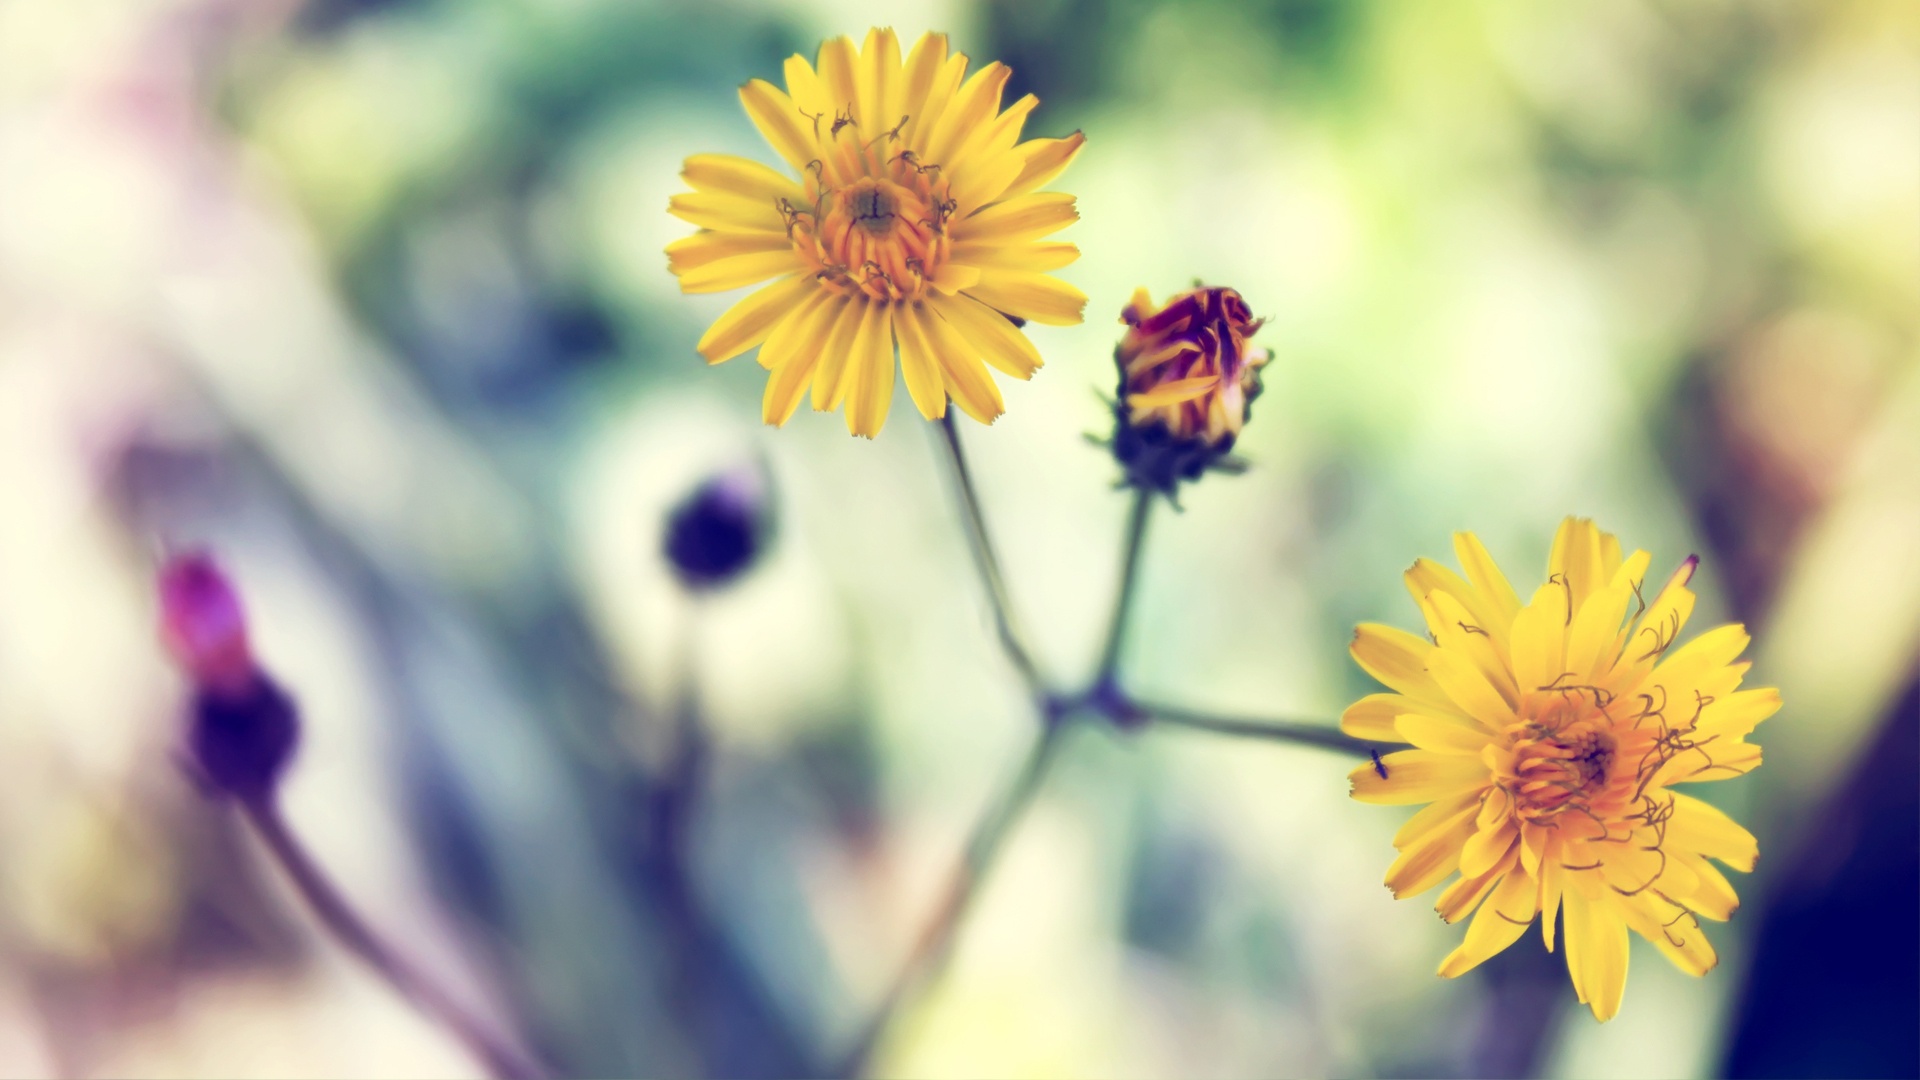 yellow daisy beautiful flowers desktop wallpaper free download